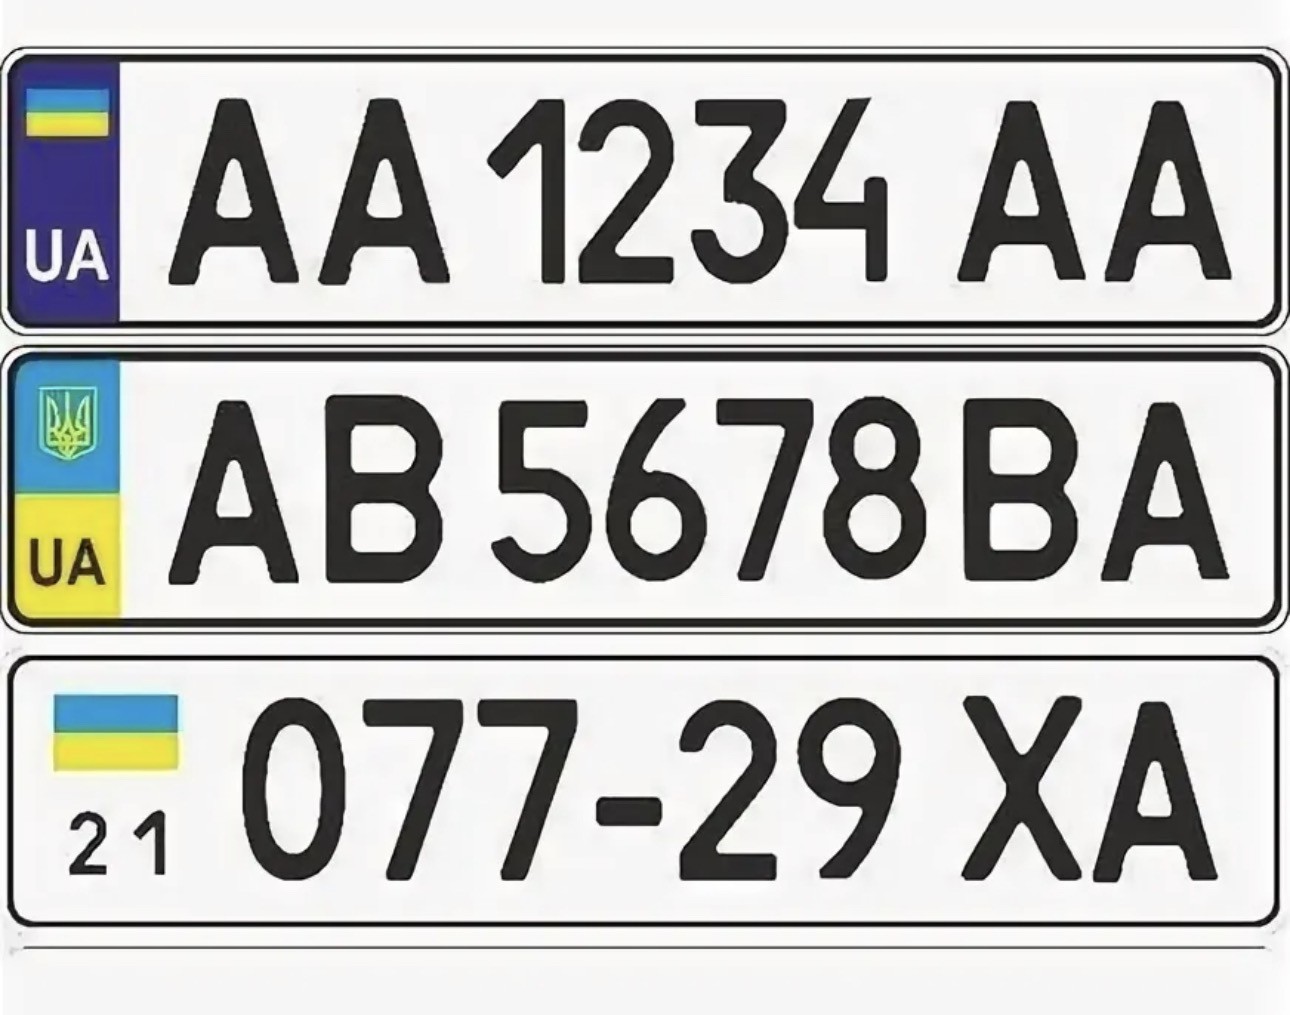 Автомобильные коды украины. Автомобильный гос номер Украины. Украинские автомобильные номера. Номера машин Украины. Украйнсуи номера на авто.